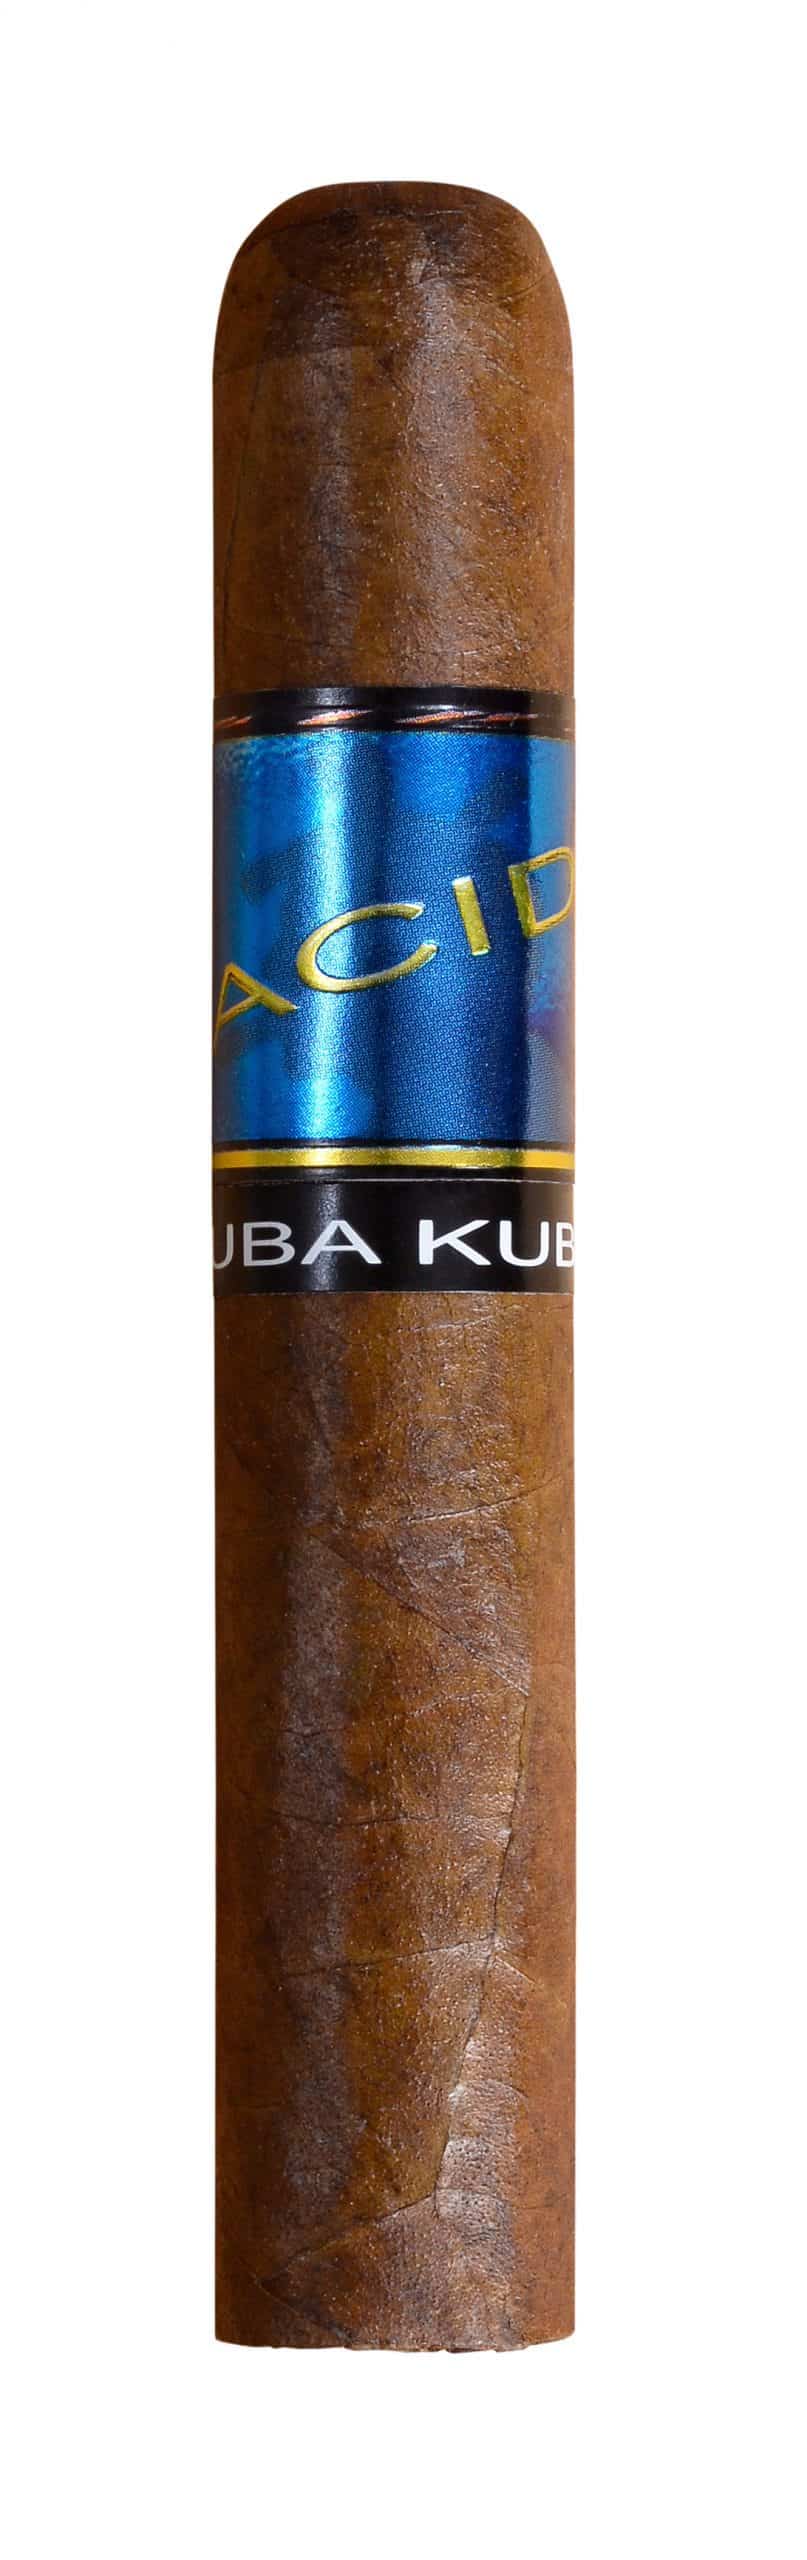 single acid kuba kuba cigars